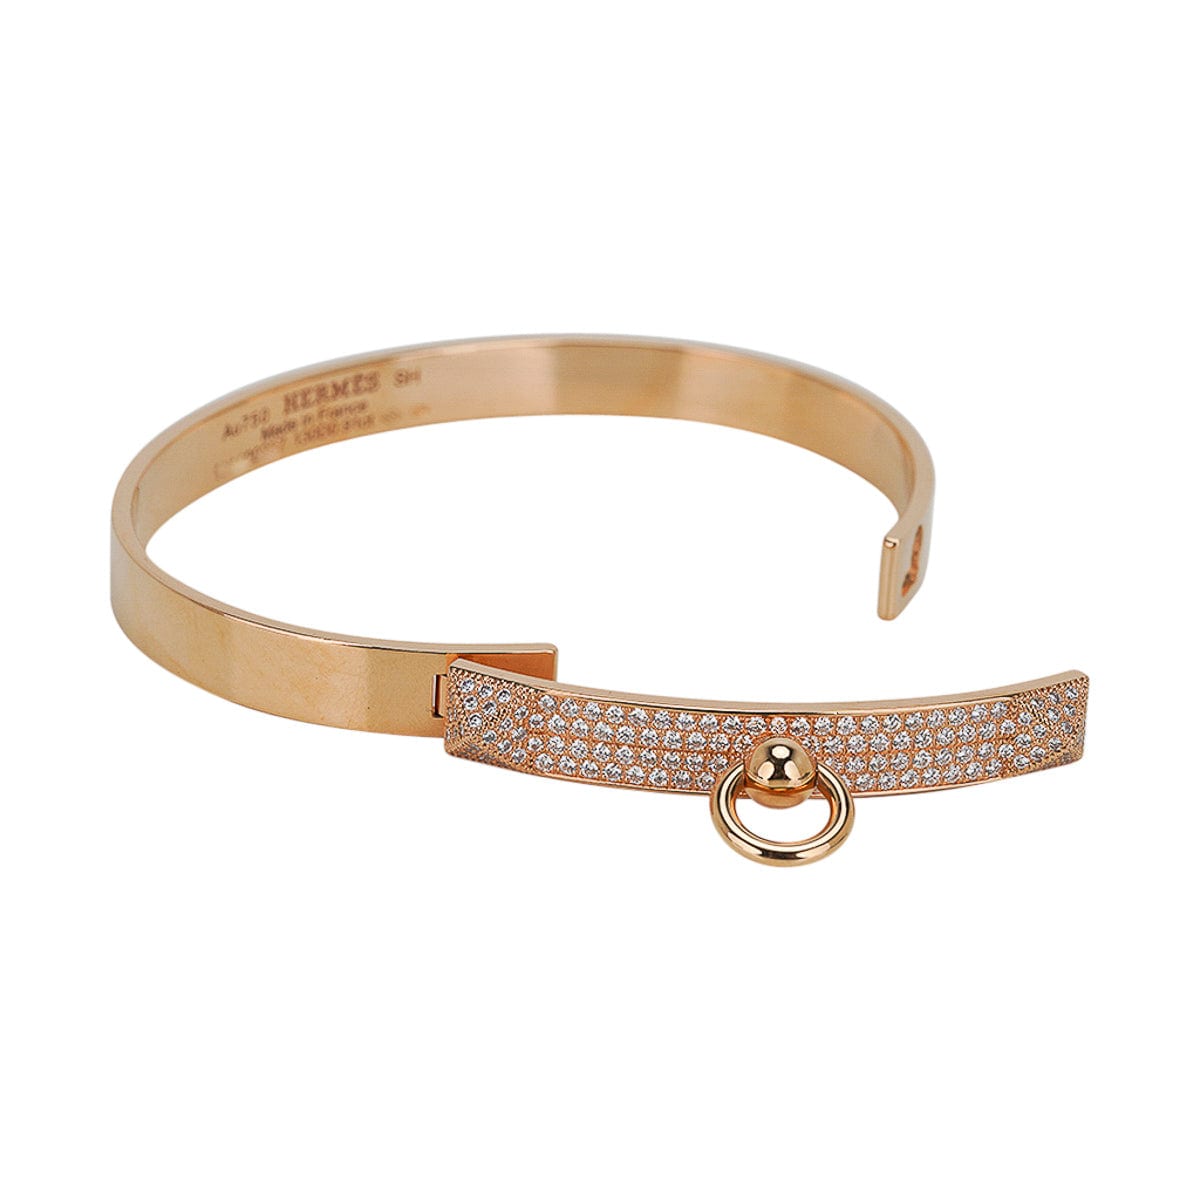 Hermes Collier de Chien Diamond Bracelet 18K Yellow Gold Size Small